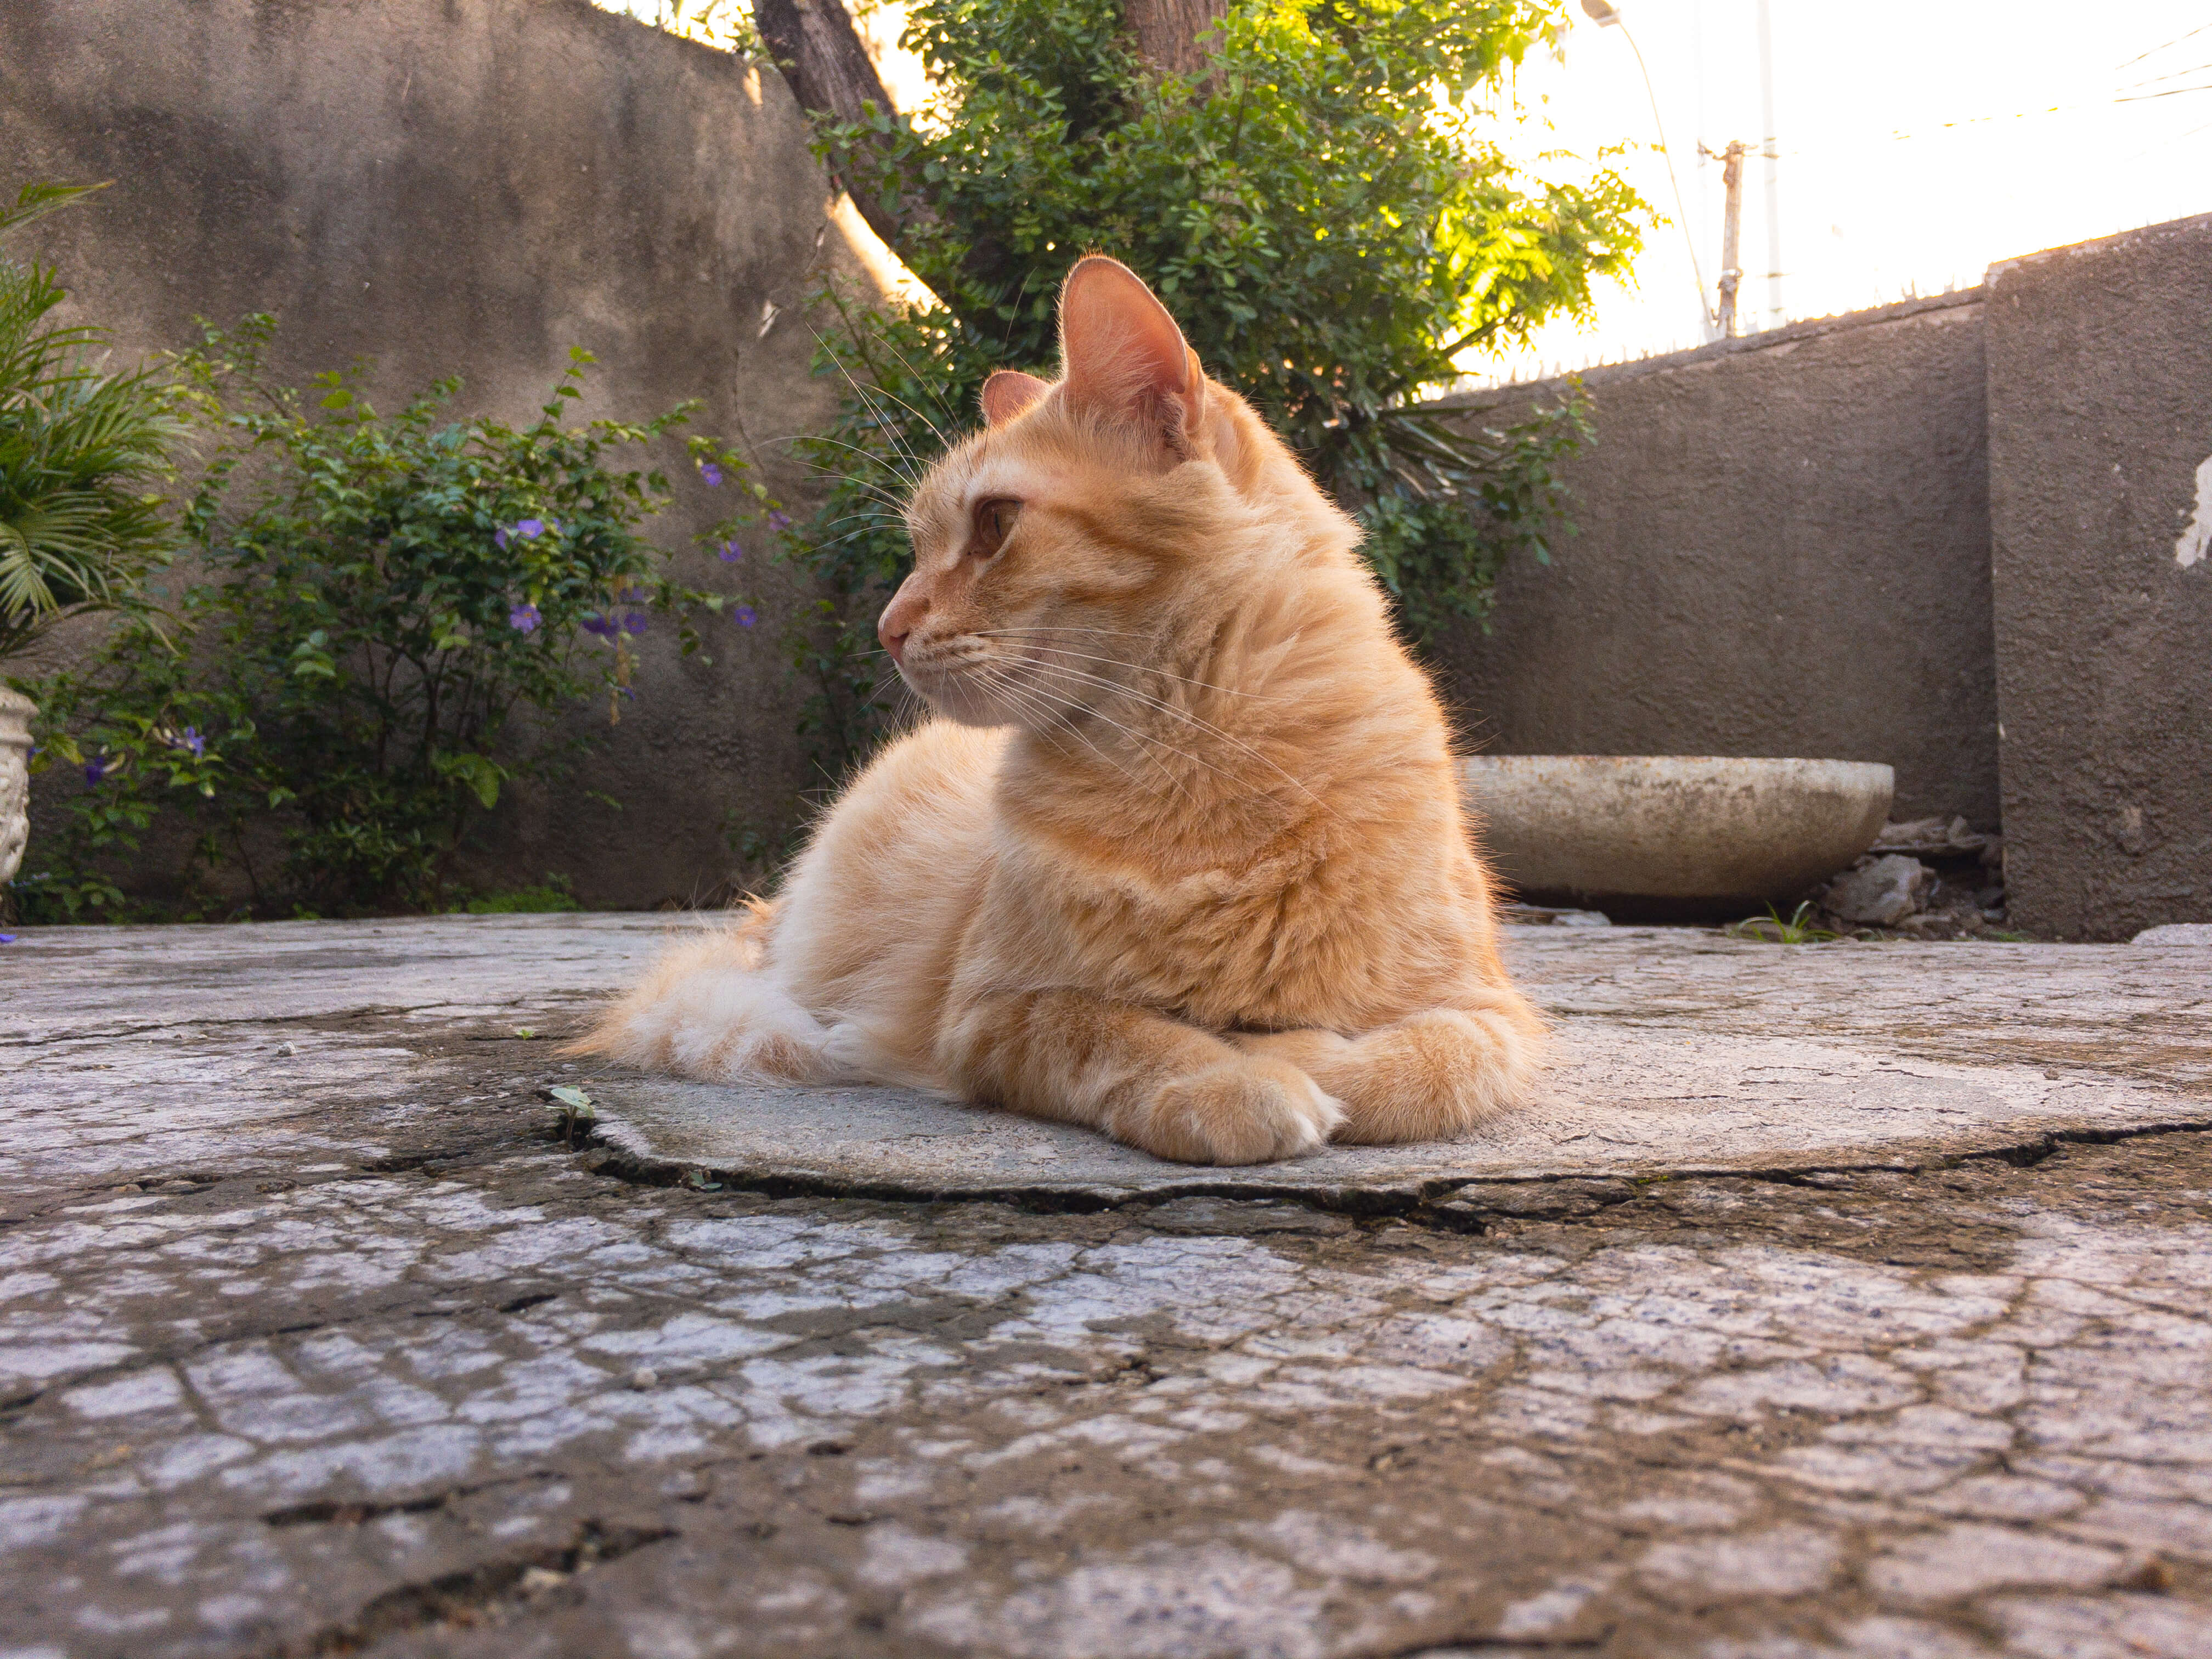 gato-laranja